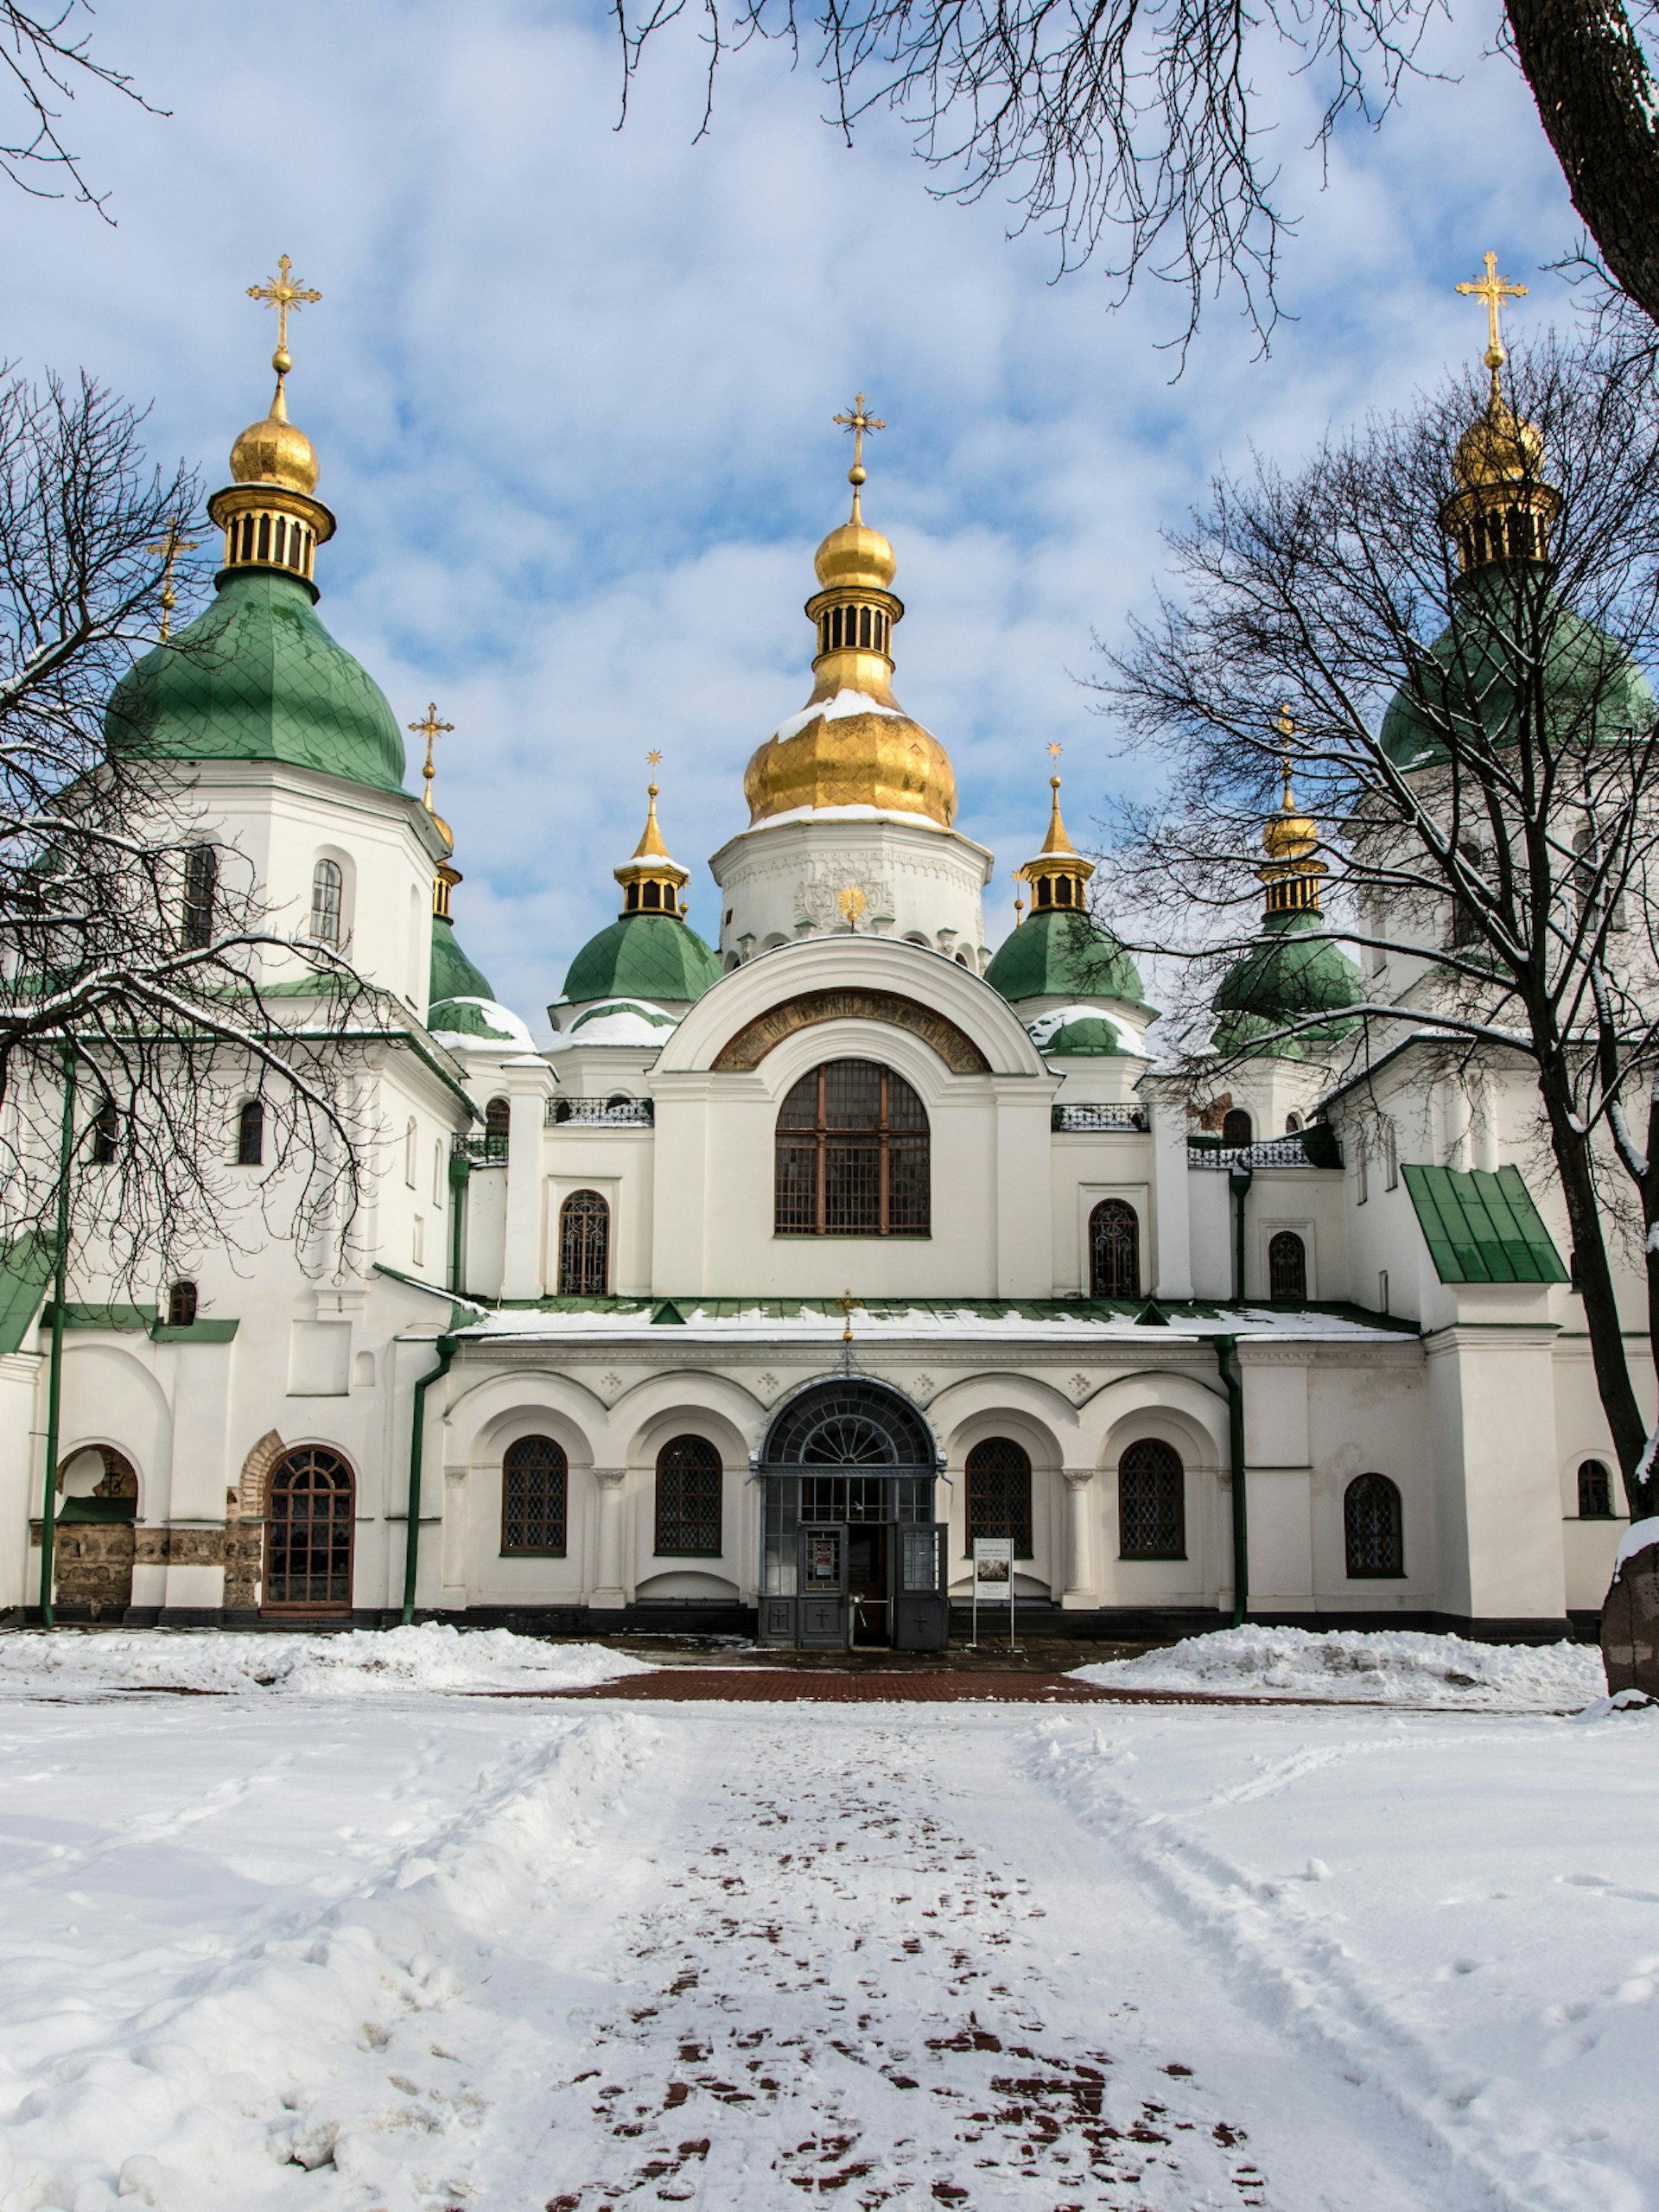 Kyiv's ancient St Sophia's Cathedral on a beautiful winter's day © Jan Willem van Hofwegen / Shutterstock